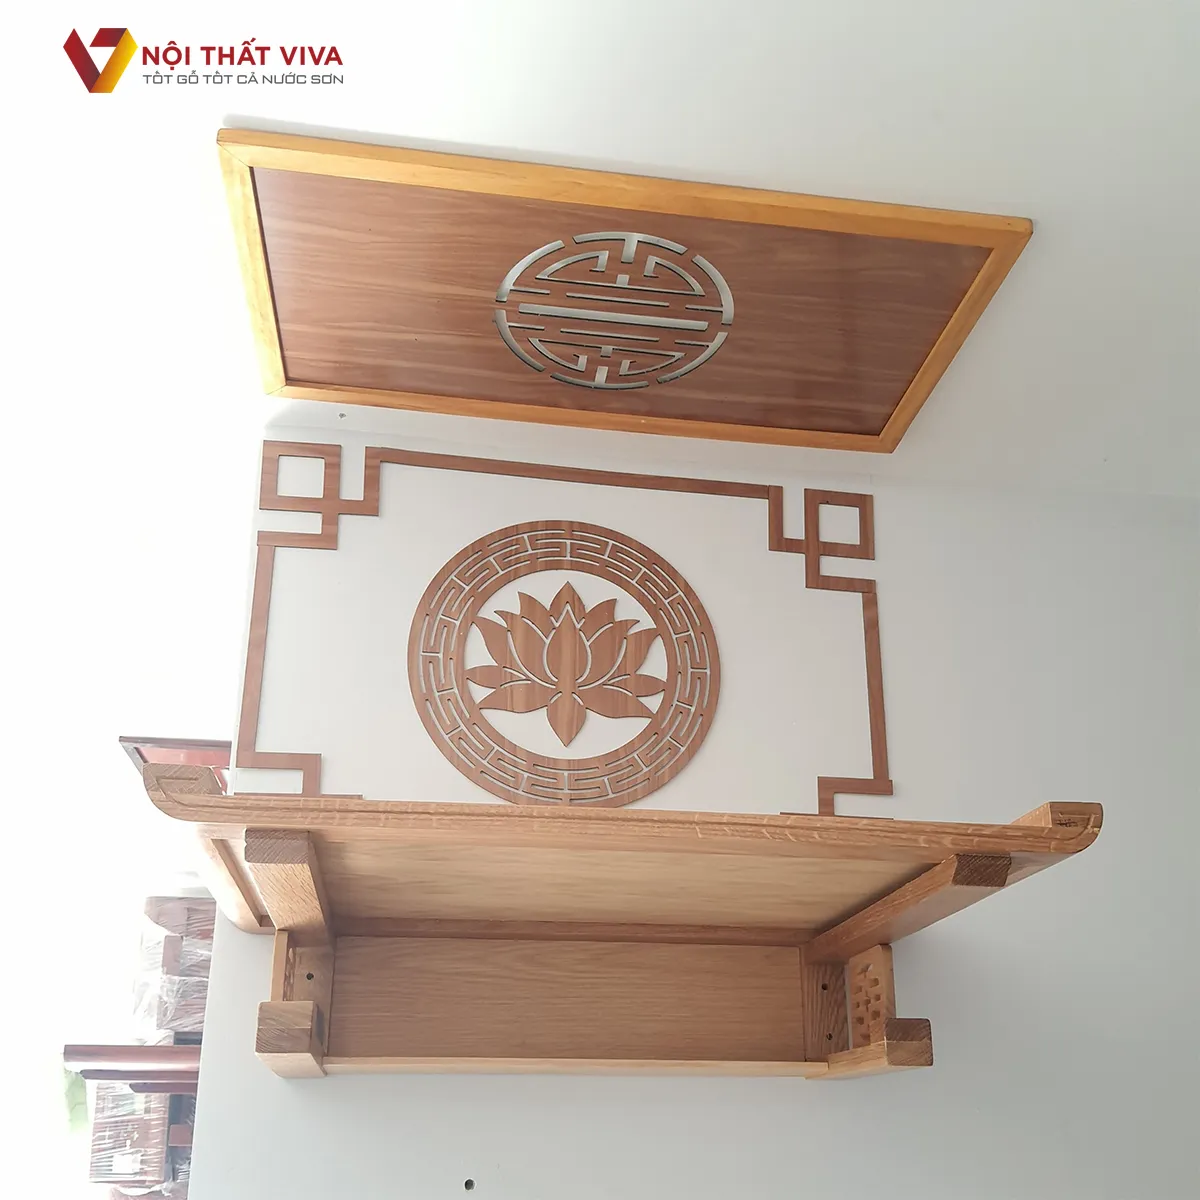 Bàn thờ treo tường gỗ công nghiệp hiện đại, giá tốt, có sẵn tại Nội thất Viva.